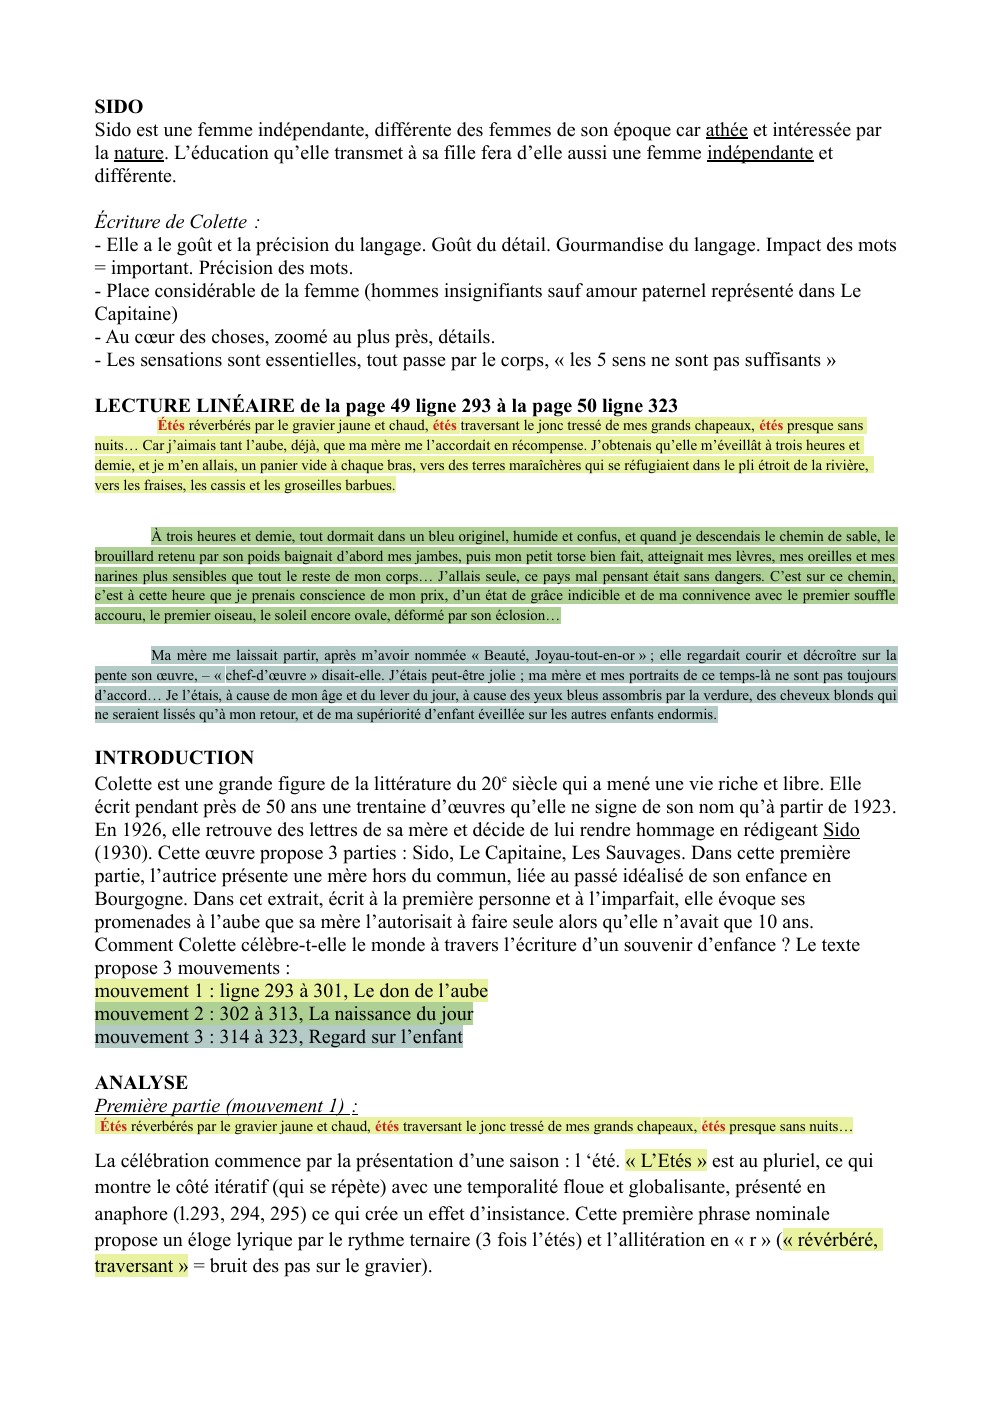 Prévisualisation du document Analyse linéaire Sido Colette pages 49 et 50